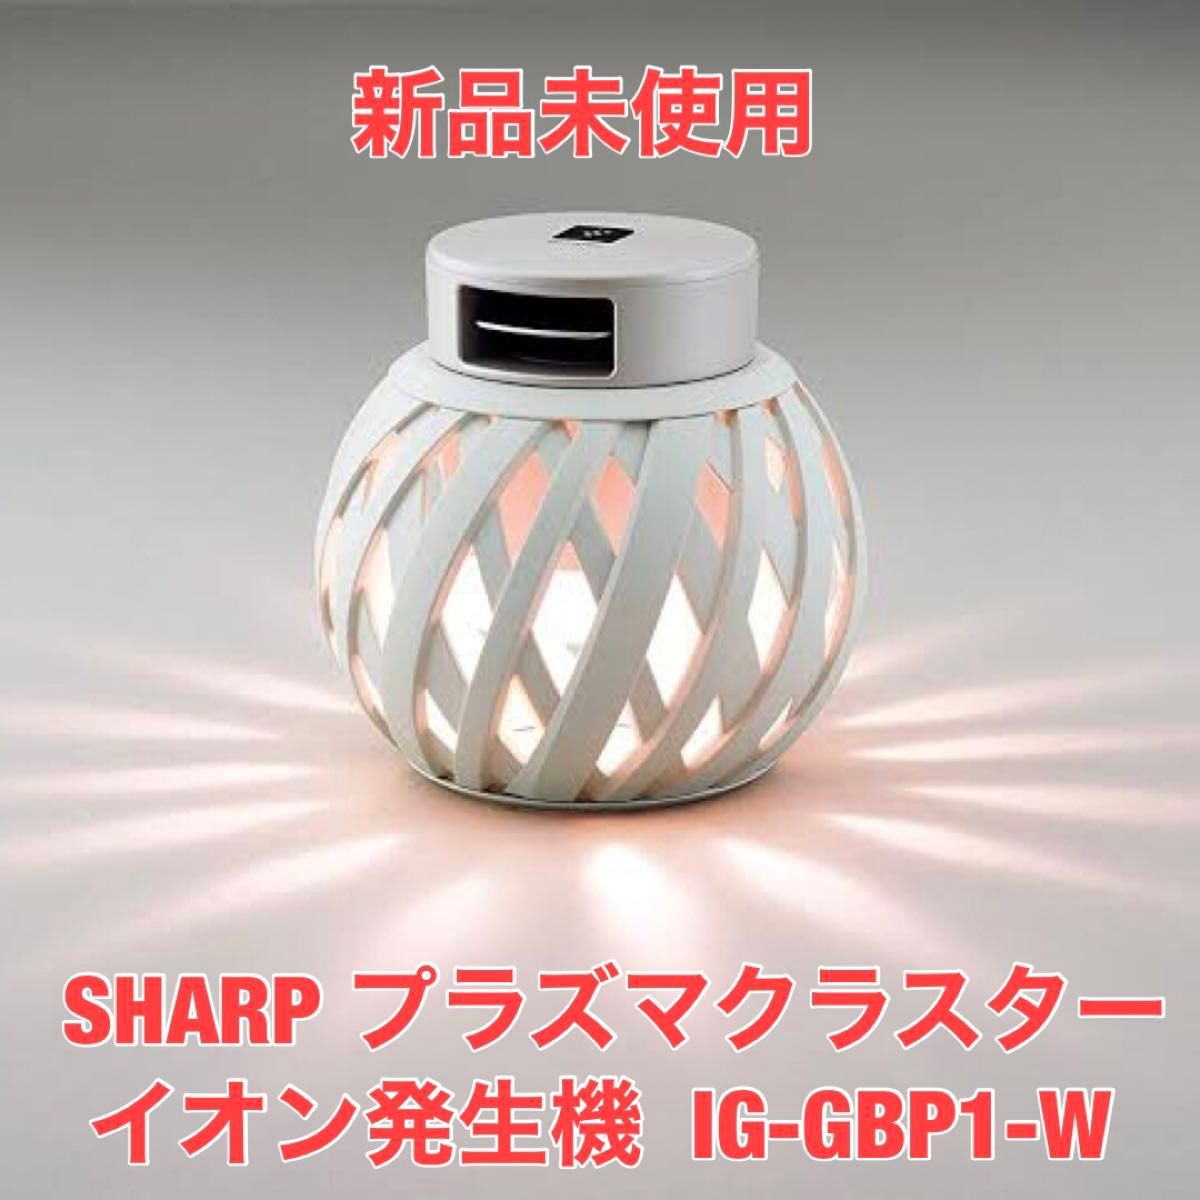 新品未使用 SHARP  IG-GBP1-W  プラズマクラスターイオン発生機  ホワイト系 シャープ